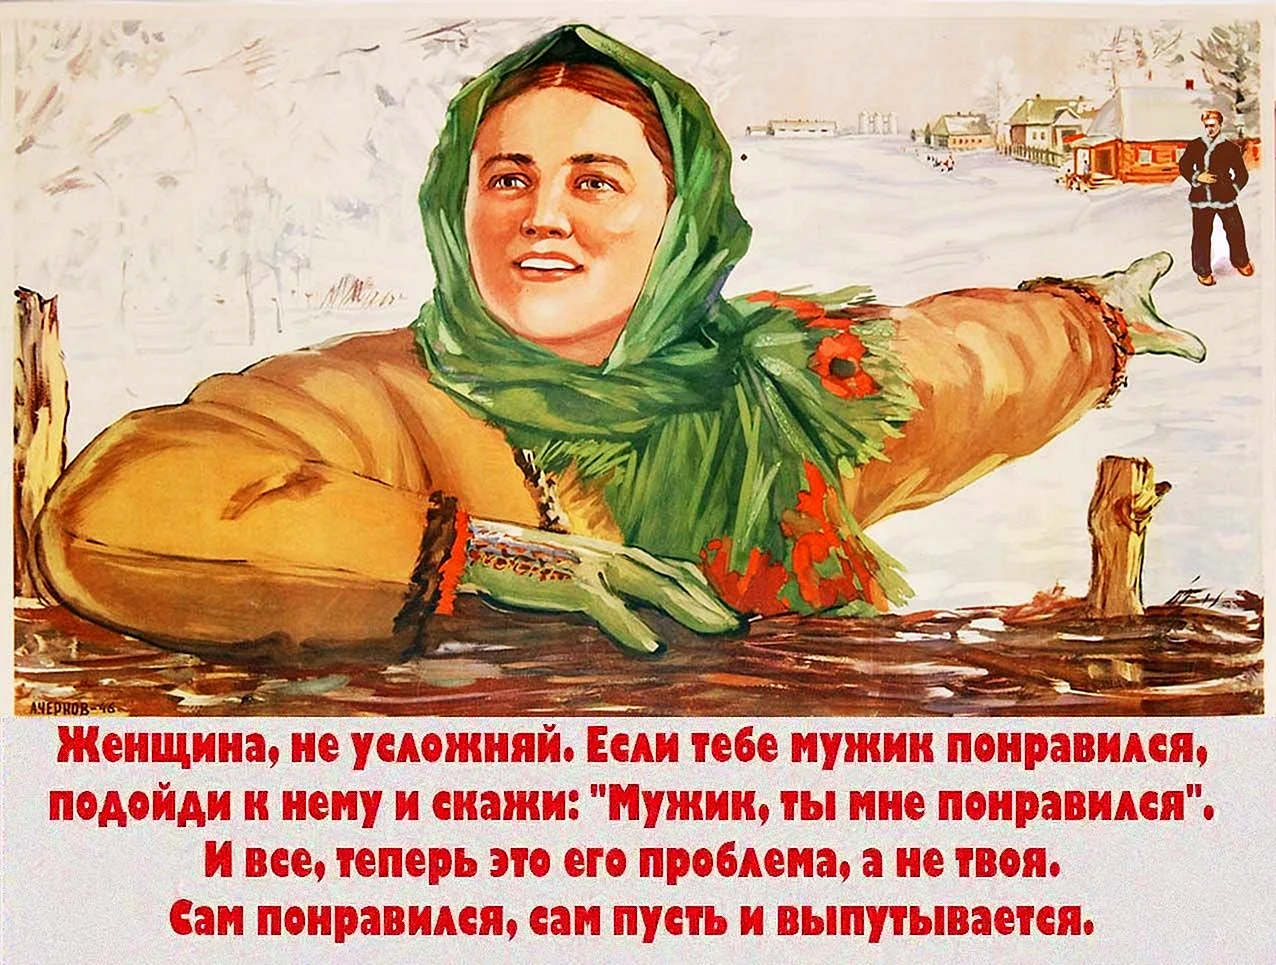 Советские предвыборные плакаты